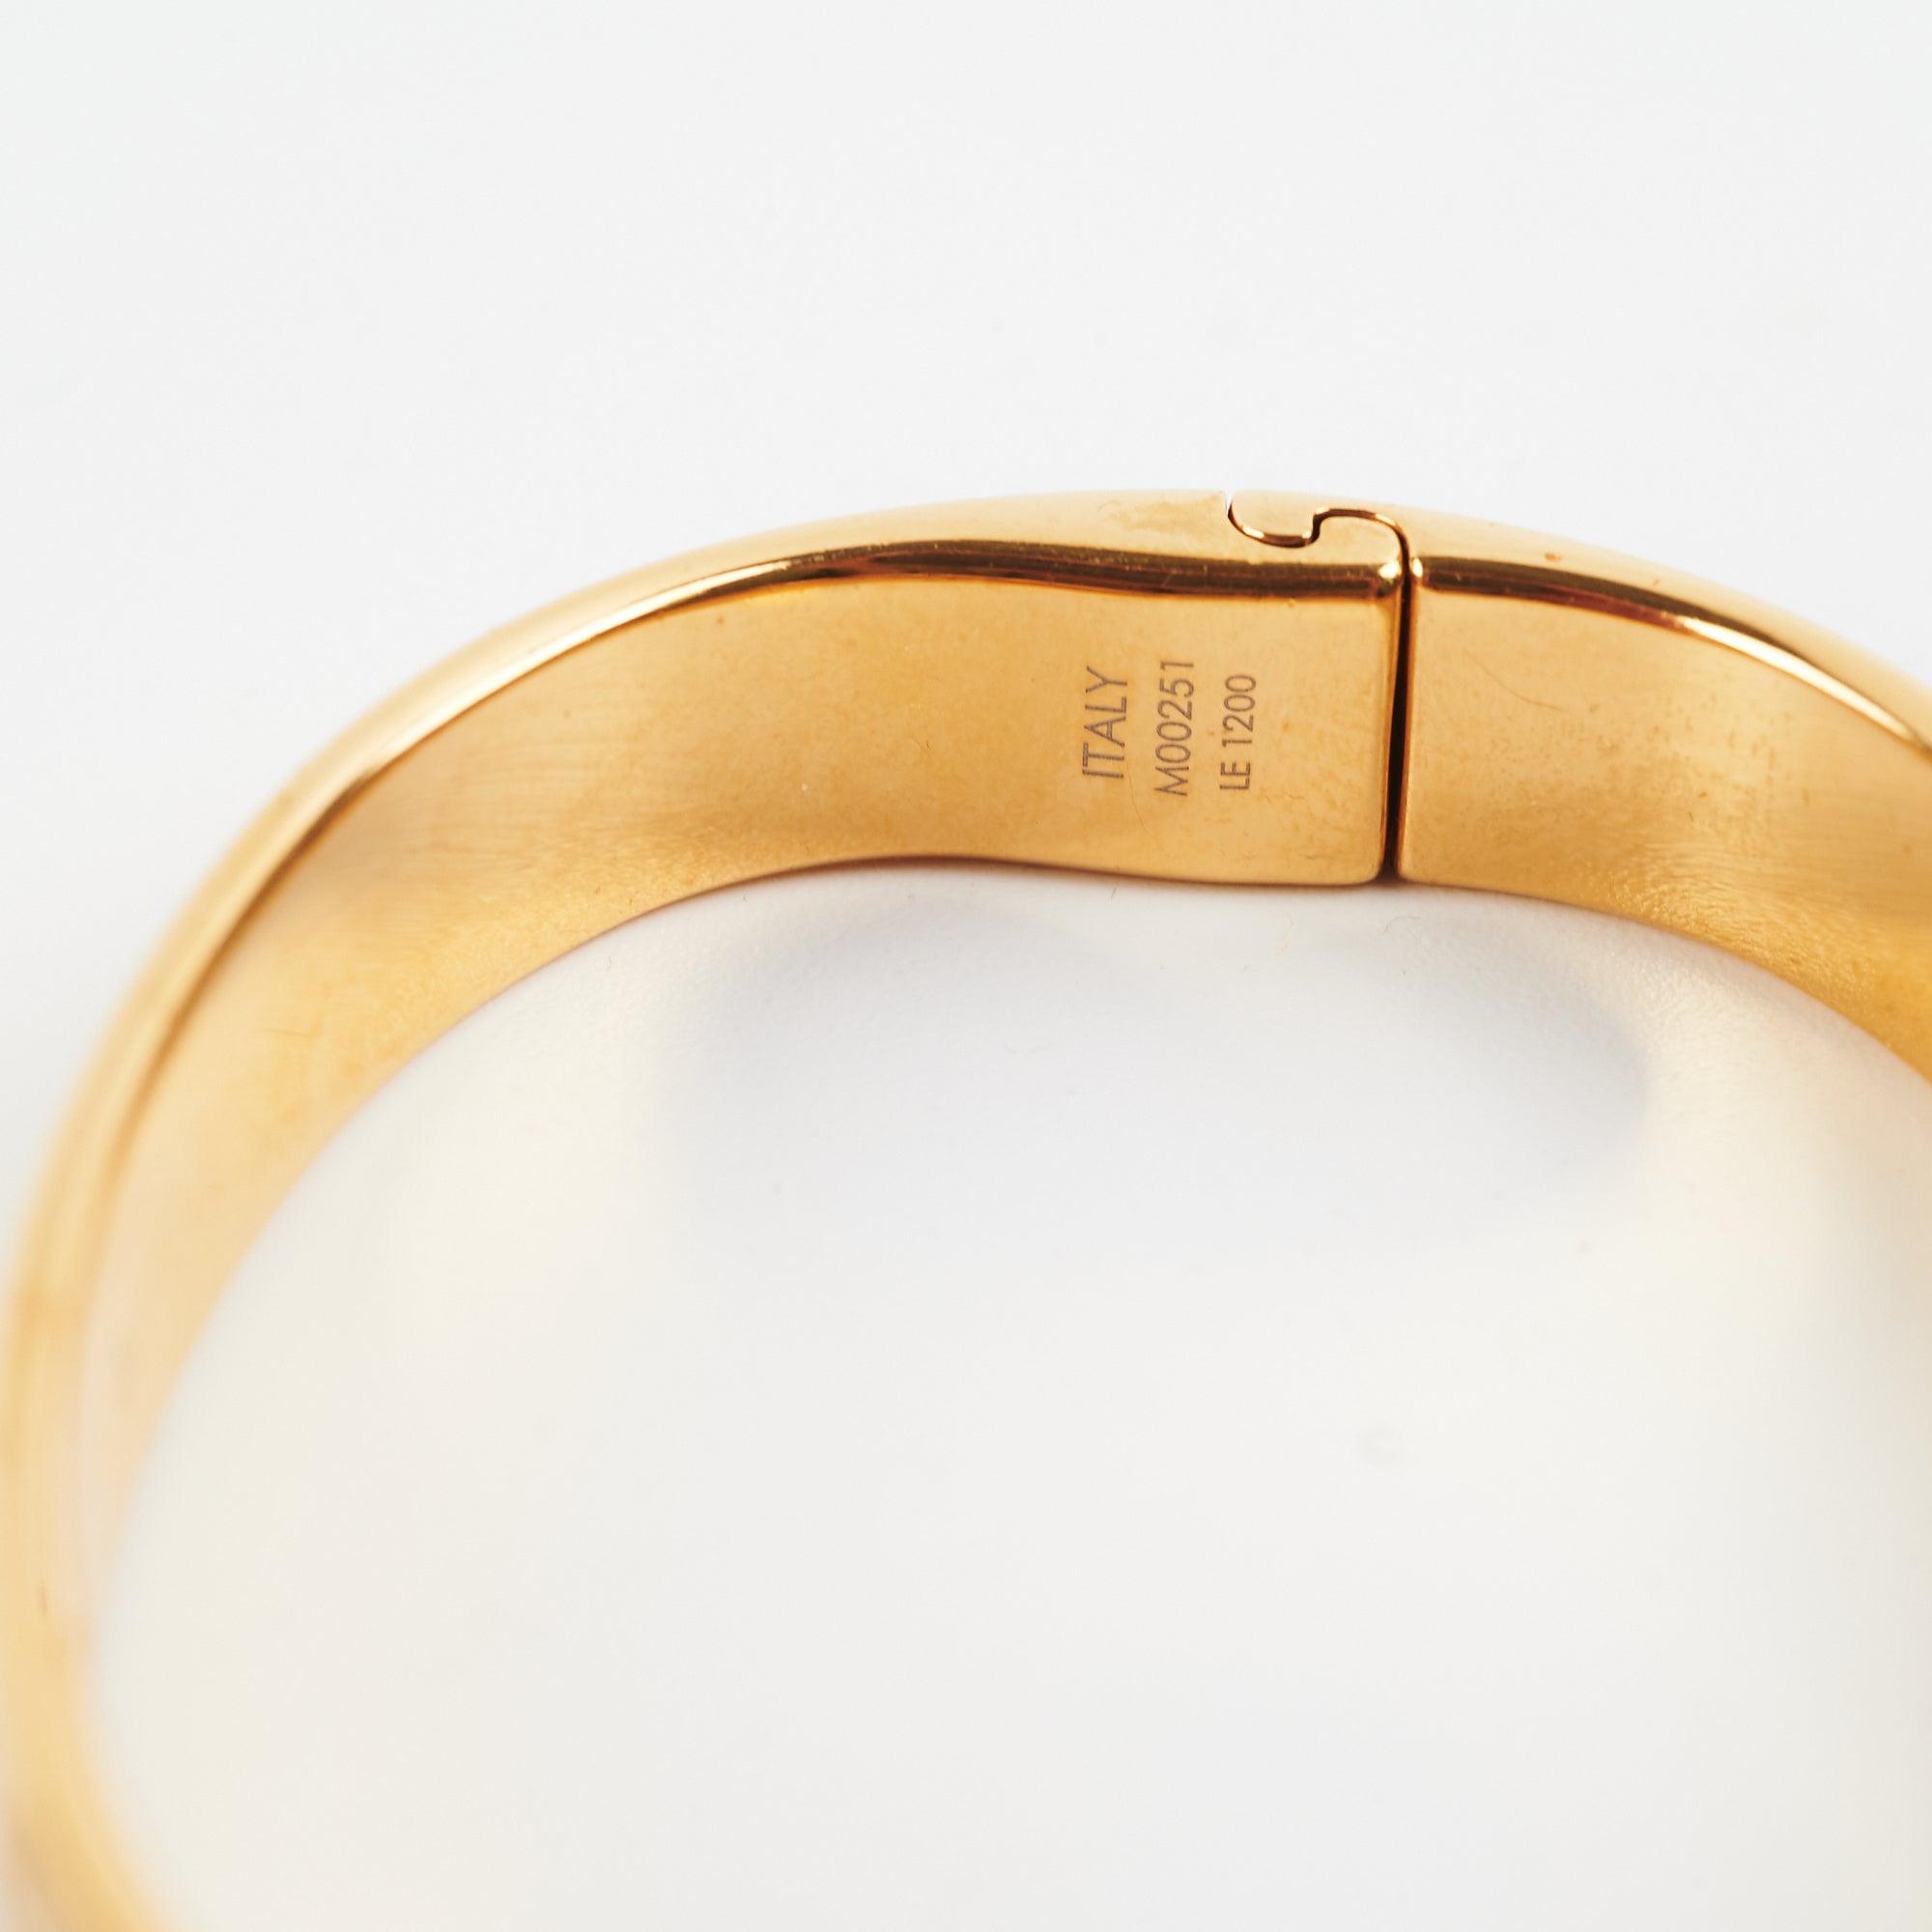 LV Nanogram Cuff Bracelet – Theglamsutra